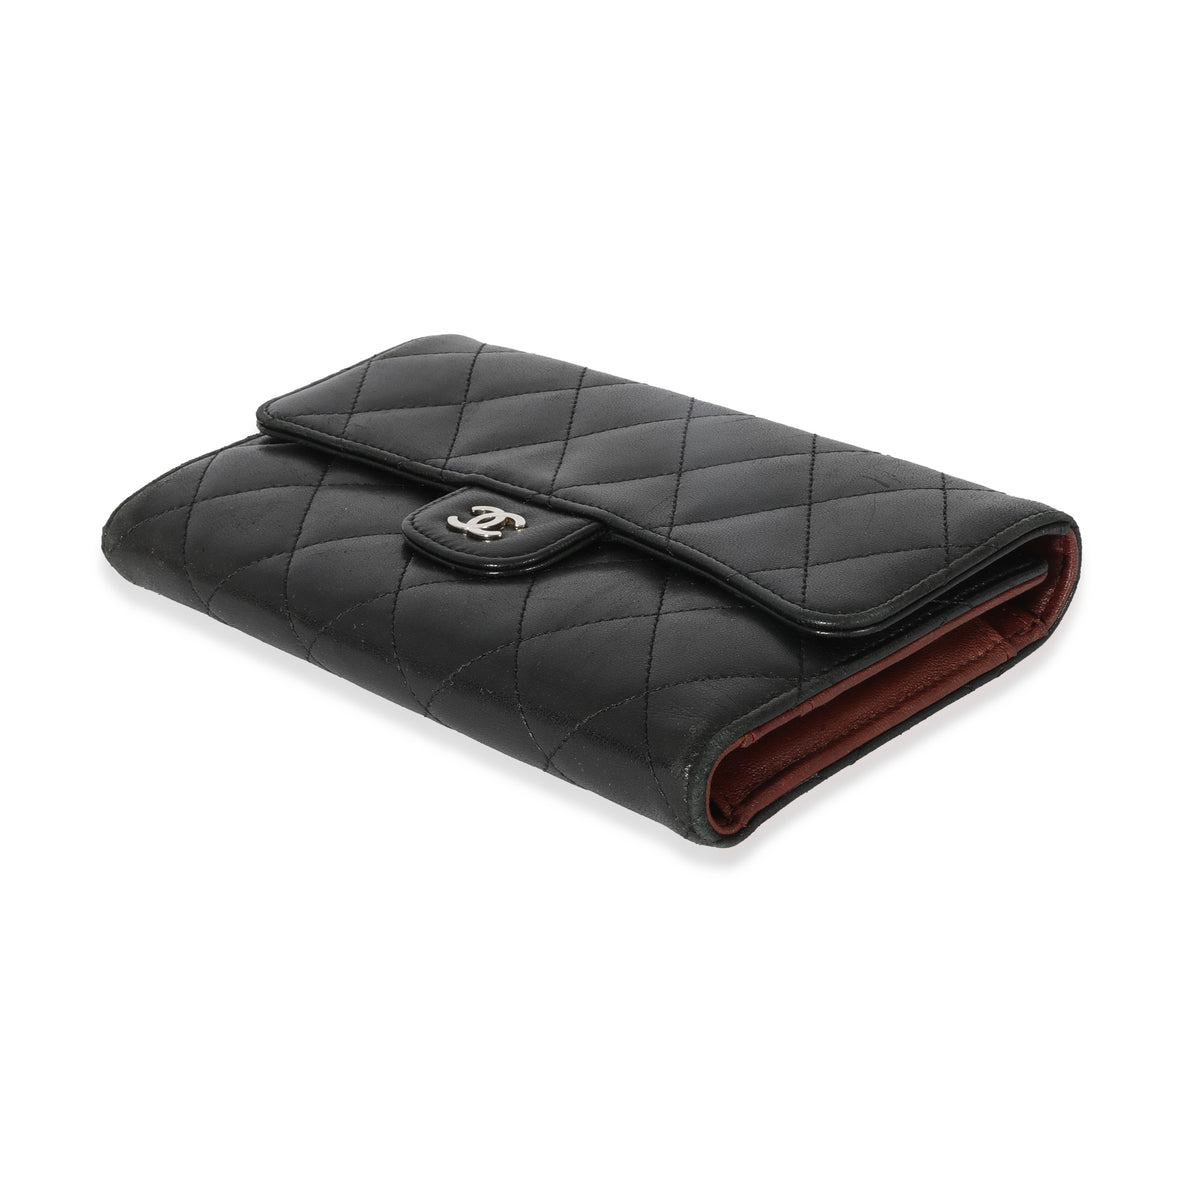 Chanel Black Lambskin Classic Long Wallet, myGemma, FR